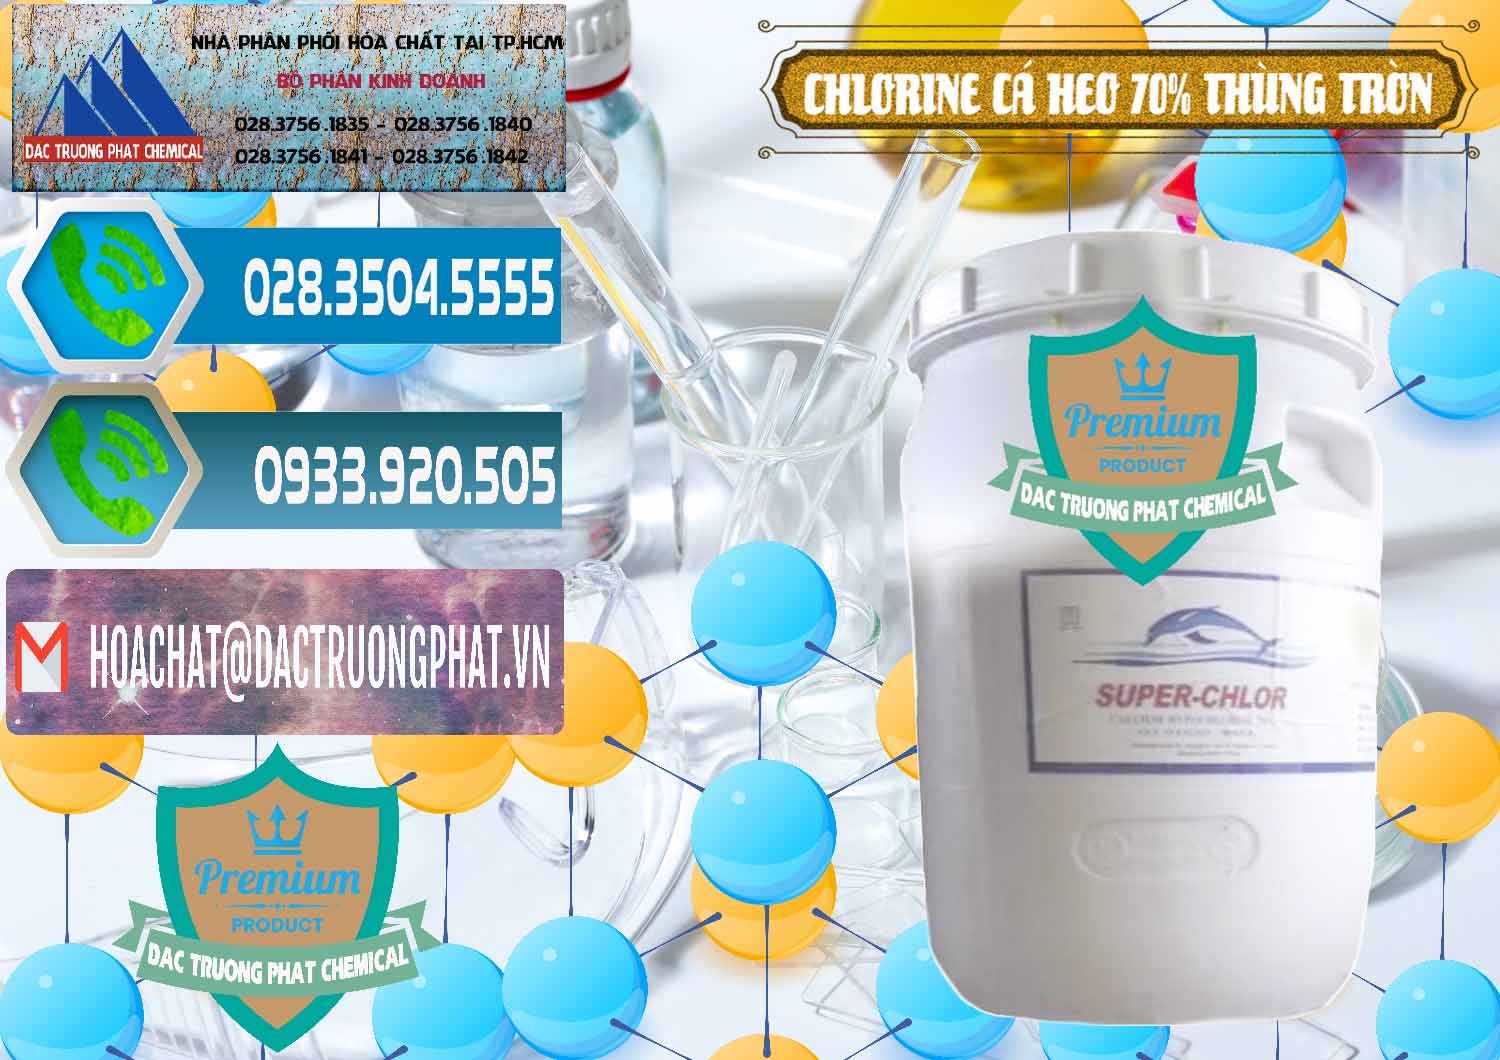 Cty kinh doanh và bán Clorin - Chlorine Cá Heo 70% Super Chlor Thùng Tròn Nắp Trắng Trung Quốc China - 0239 - Nơi cung cấp _ nhập khẩu hóa chất tại TP.HCM - congtyhoachat.net